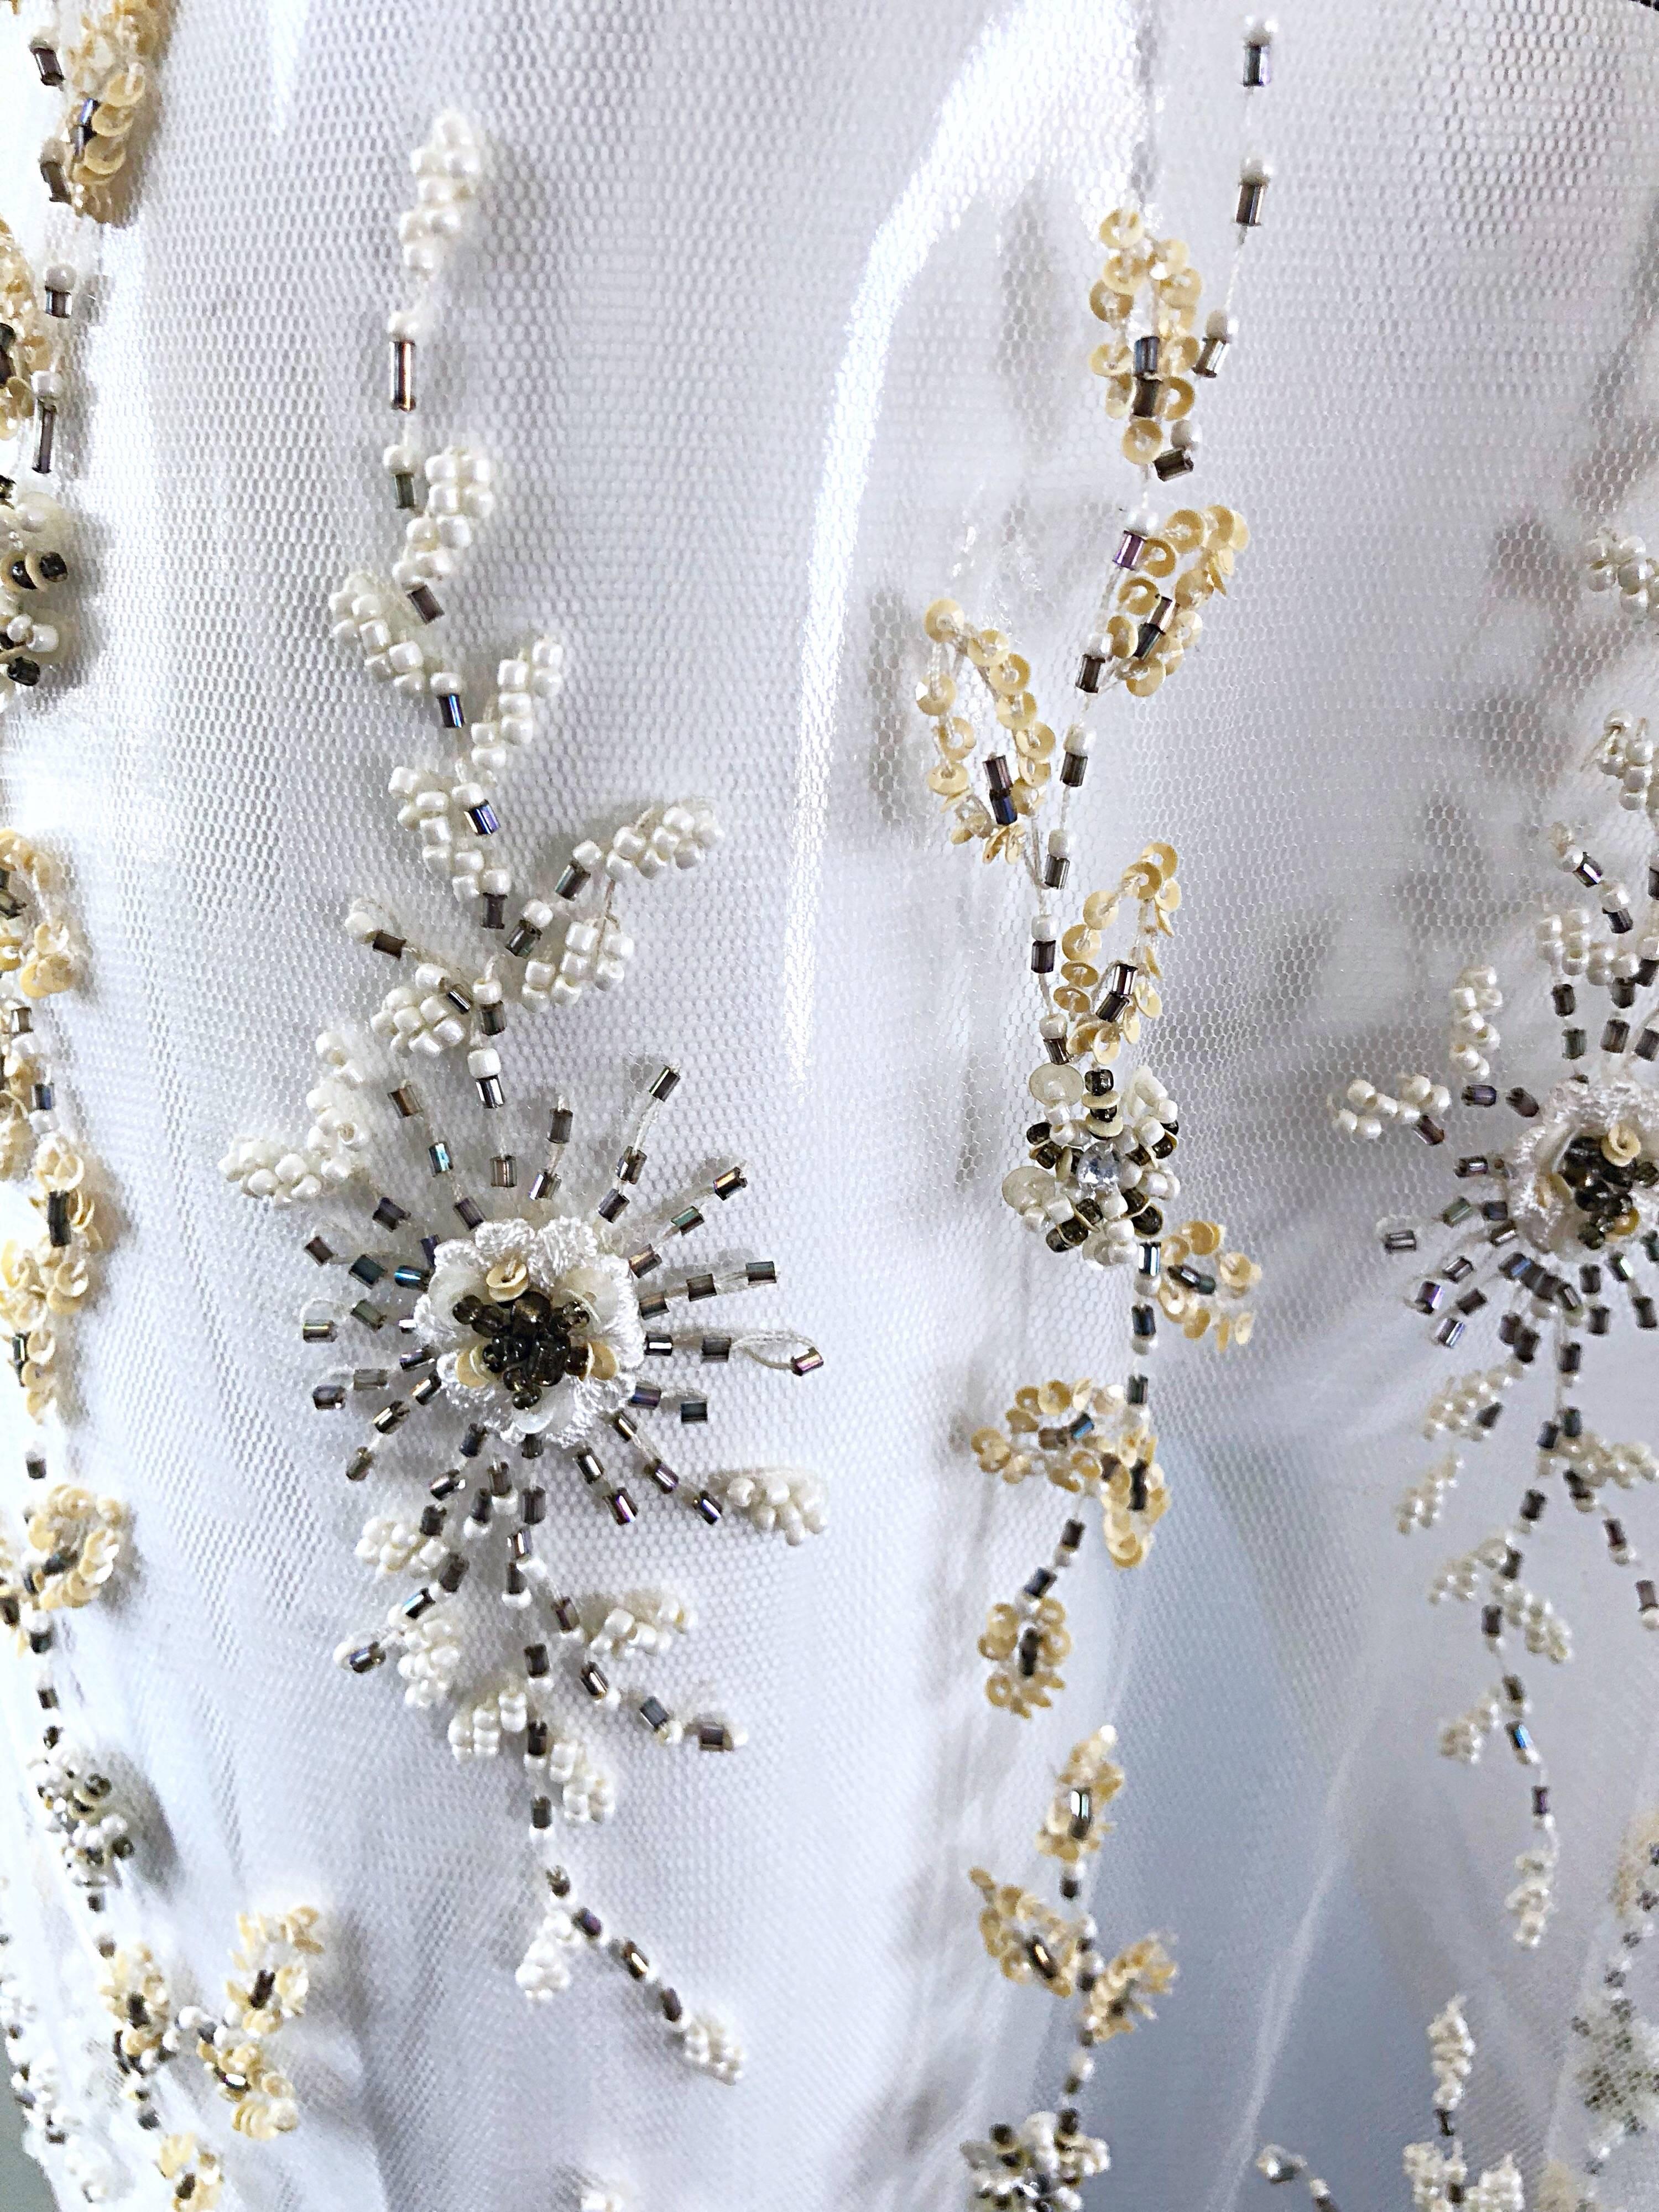 Magnifique châle / foulard vintage blanc transparent surdimensionné pour piano ! Présente des milliers de perles, perles, strass et paillettes cousus à la main. Les pompons en perles sont dotés de paillassons iridescents roses aux extrémités. Il